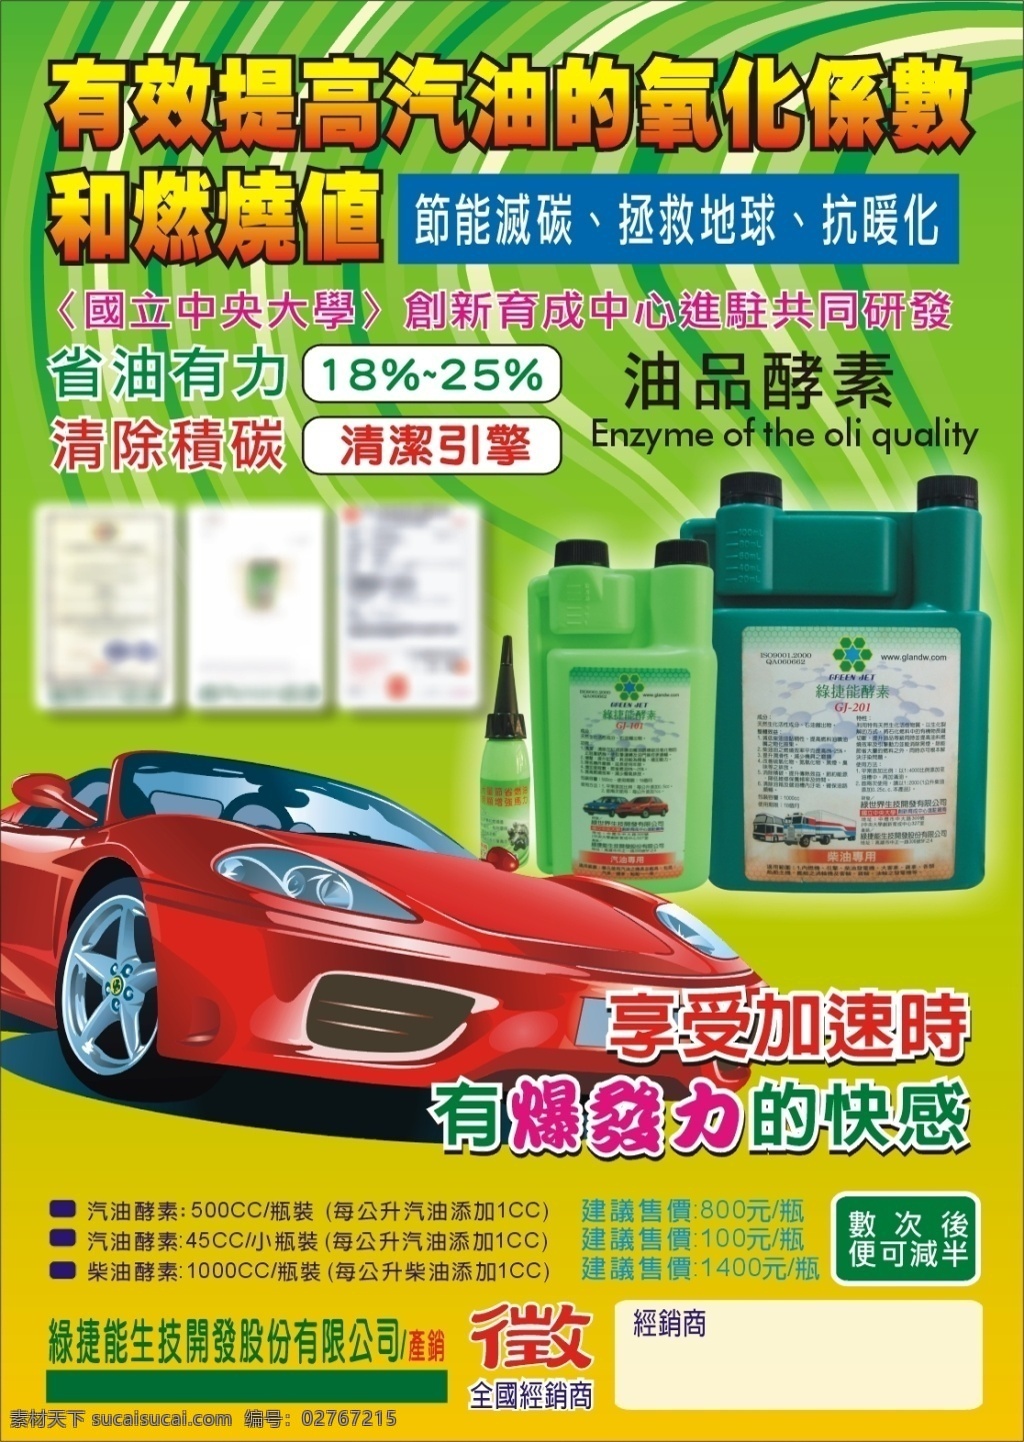 汽车油品海报 汽车油品 汽车 汽油酵素 绿色